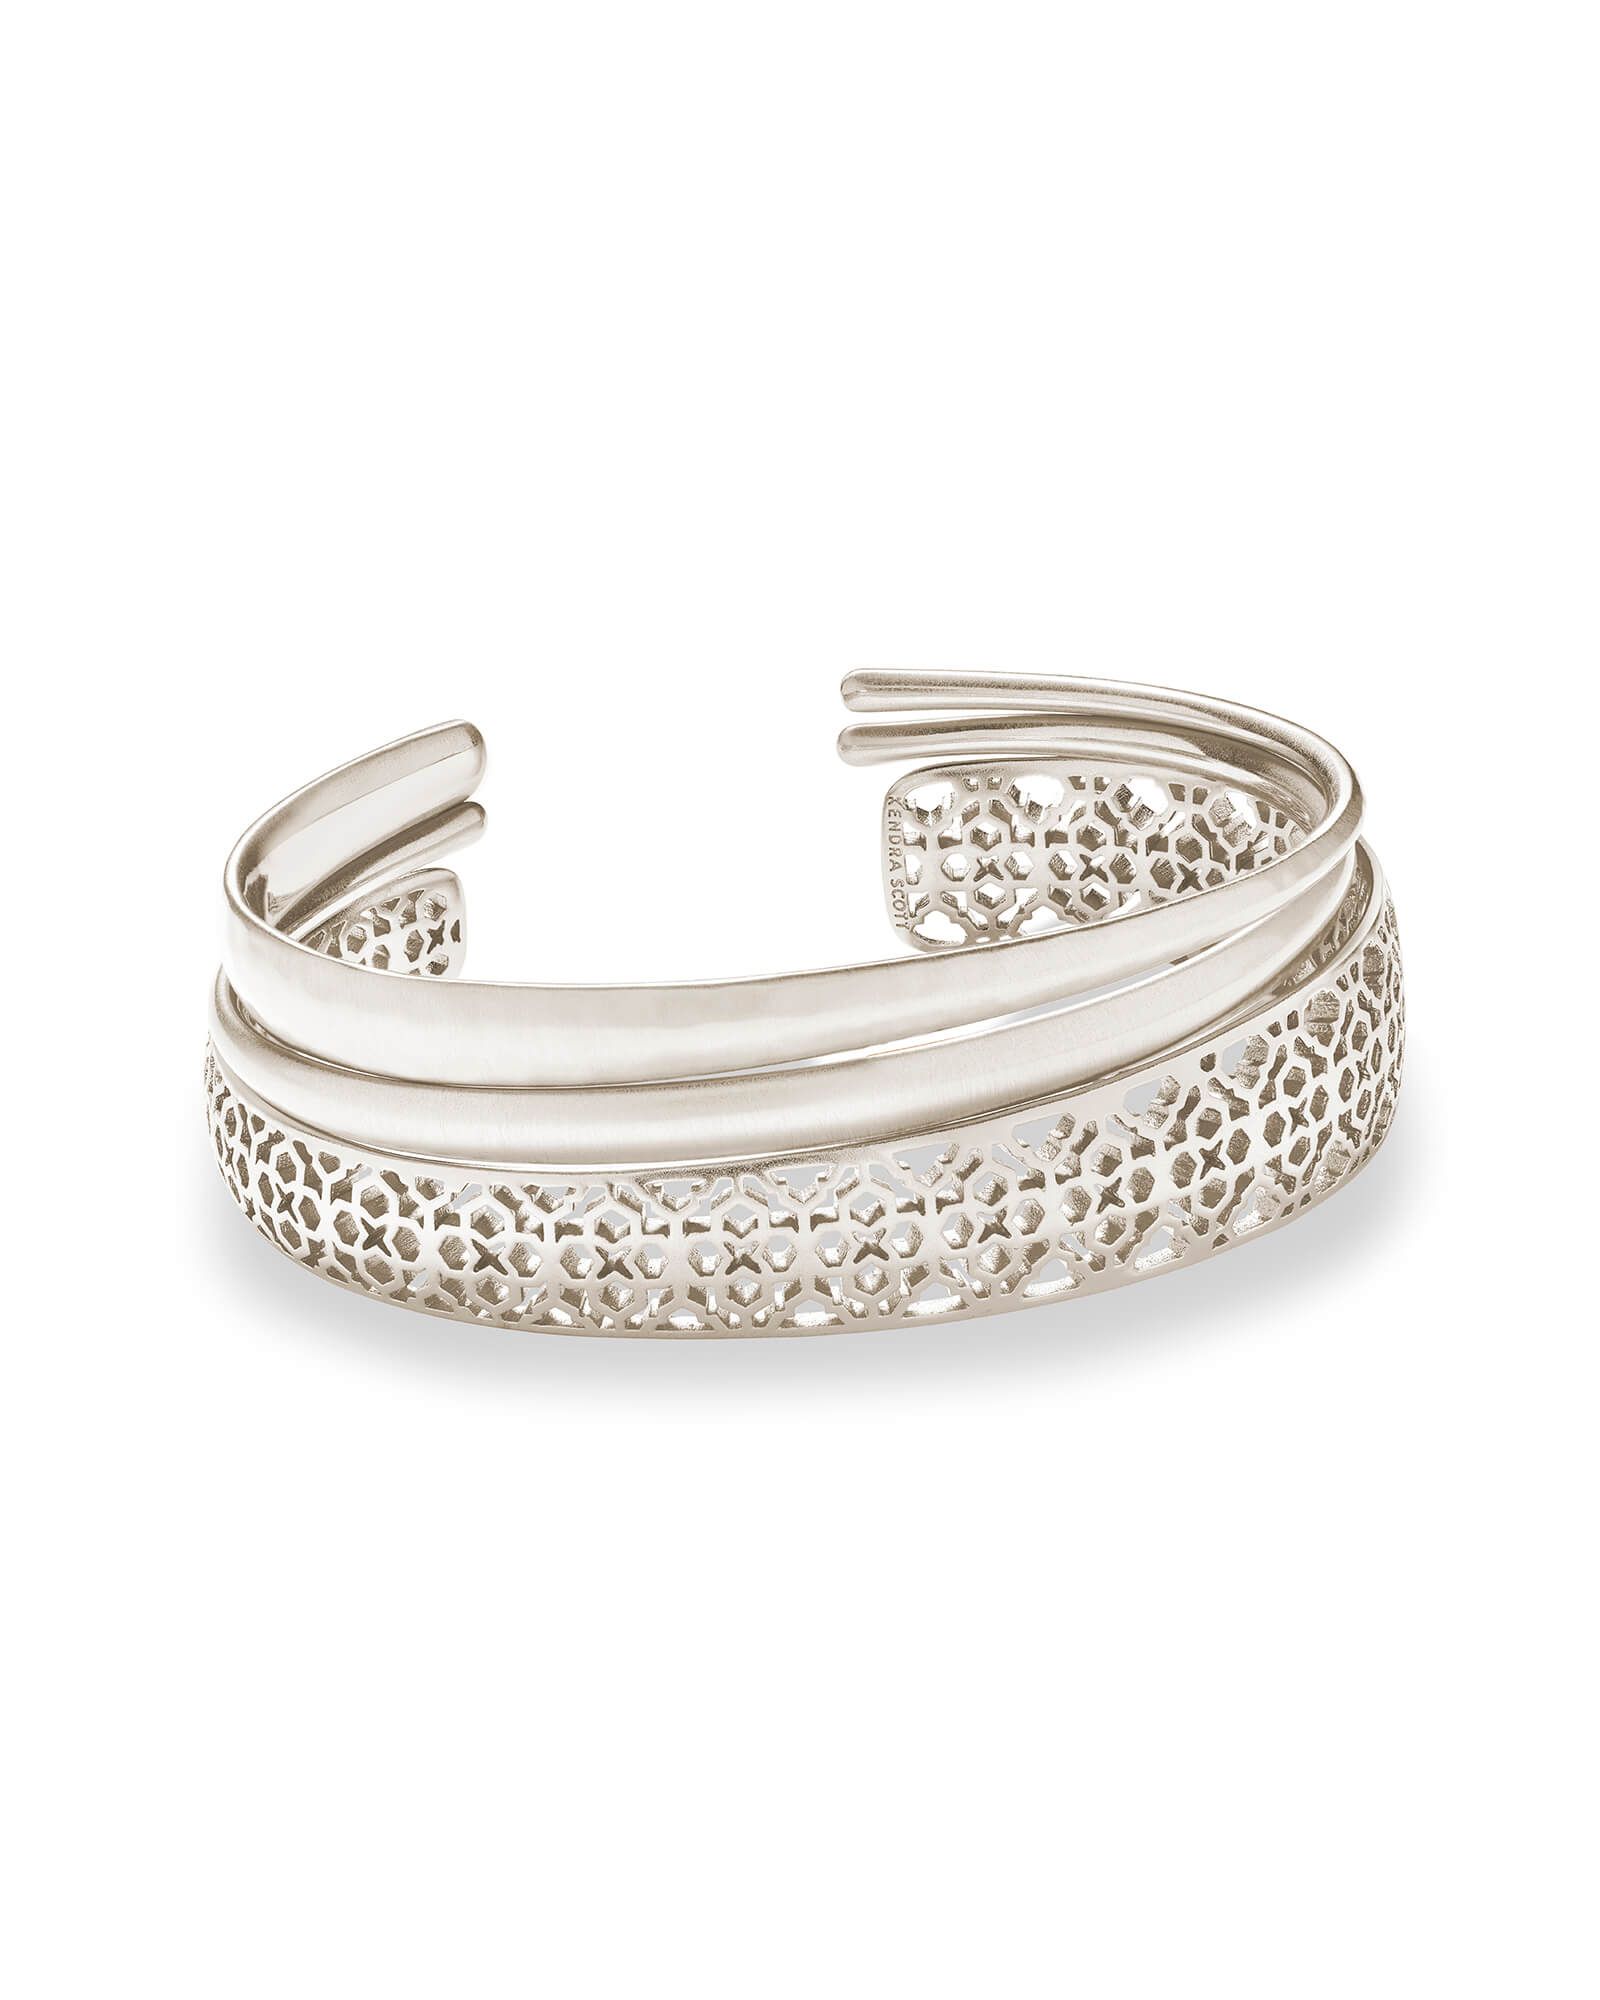 Tiana Silver Pinch Bracelet Set in Silver Filigree | Kendra Scott